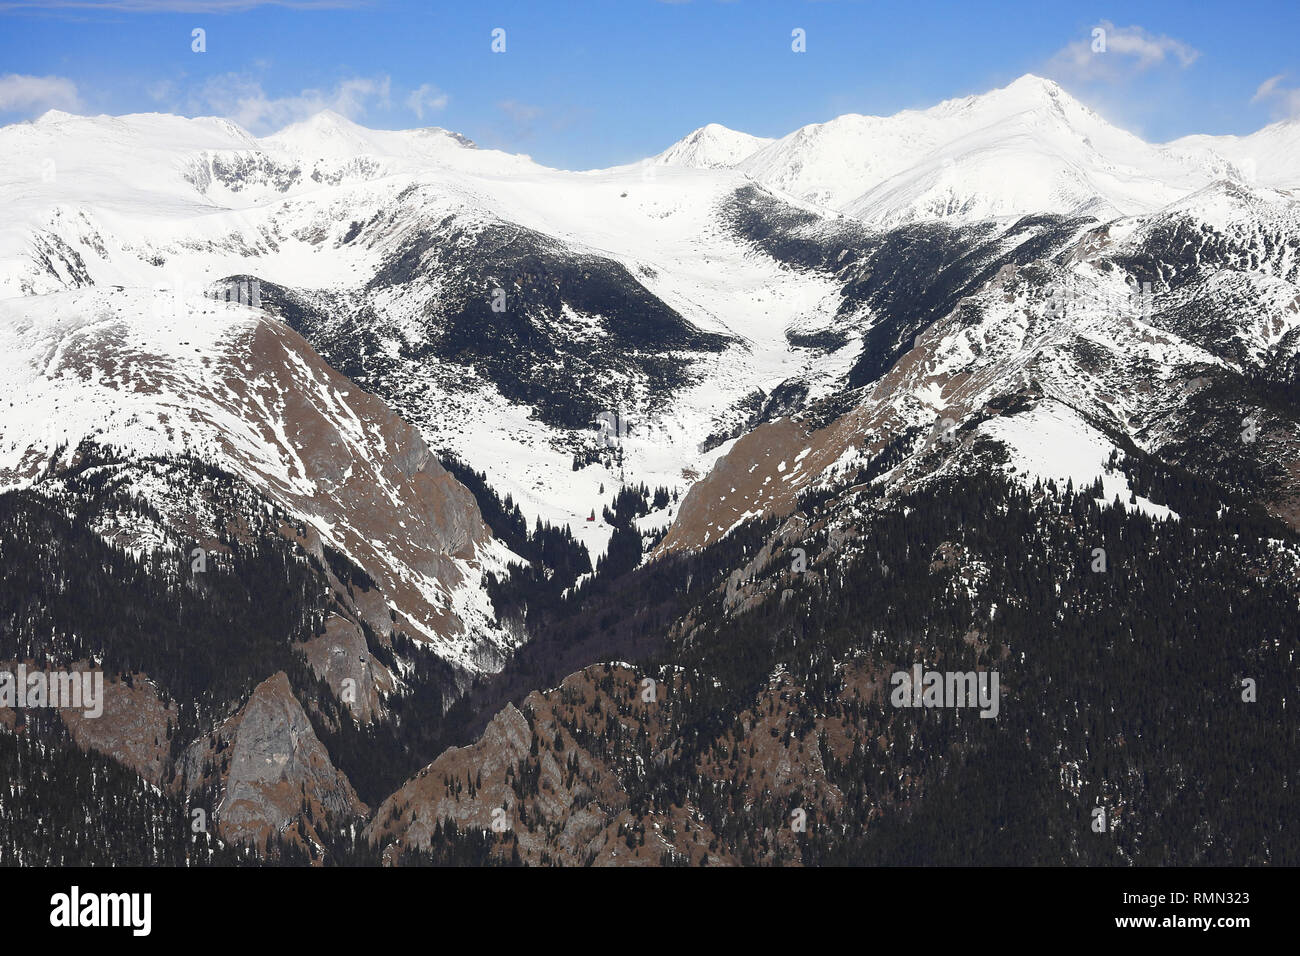 Una bellissima vista di alta quota cime coperte di neve e una bella valle in mezzo a partire tra due creste rocciose con assenza di neve a sinistra e contin Foto Stock